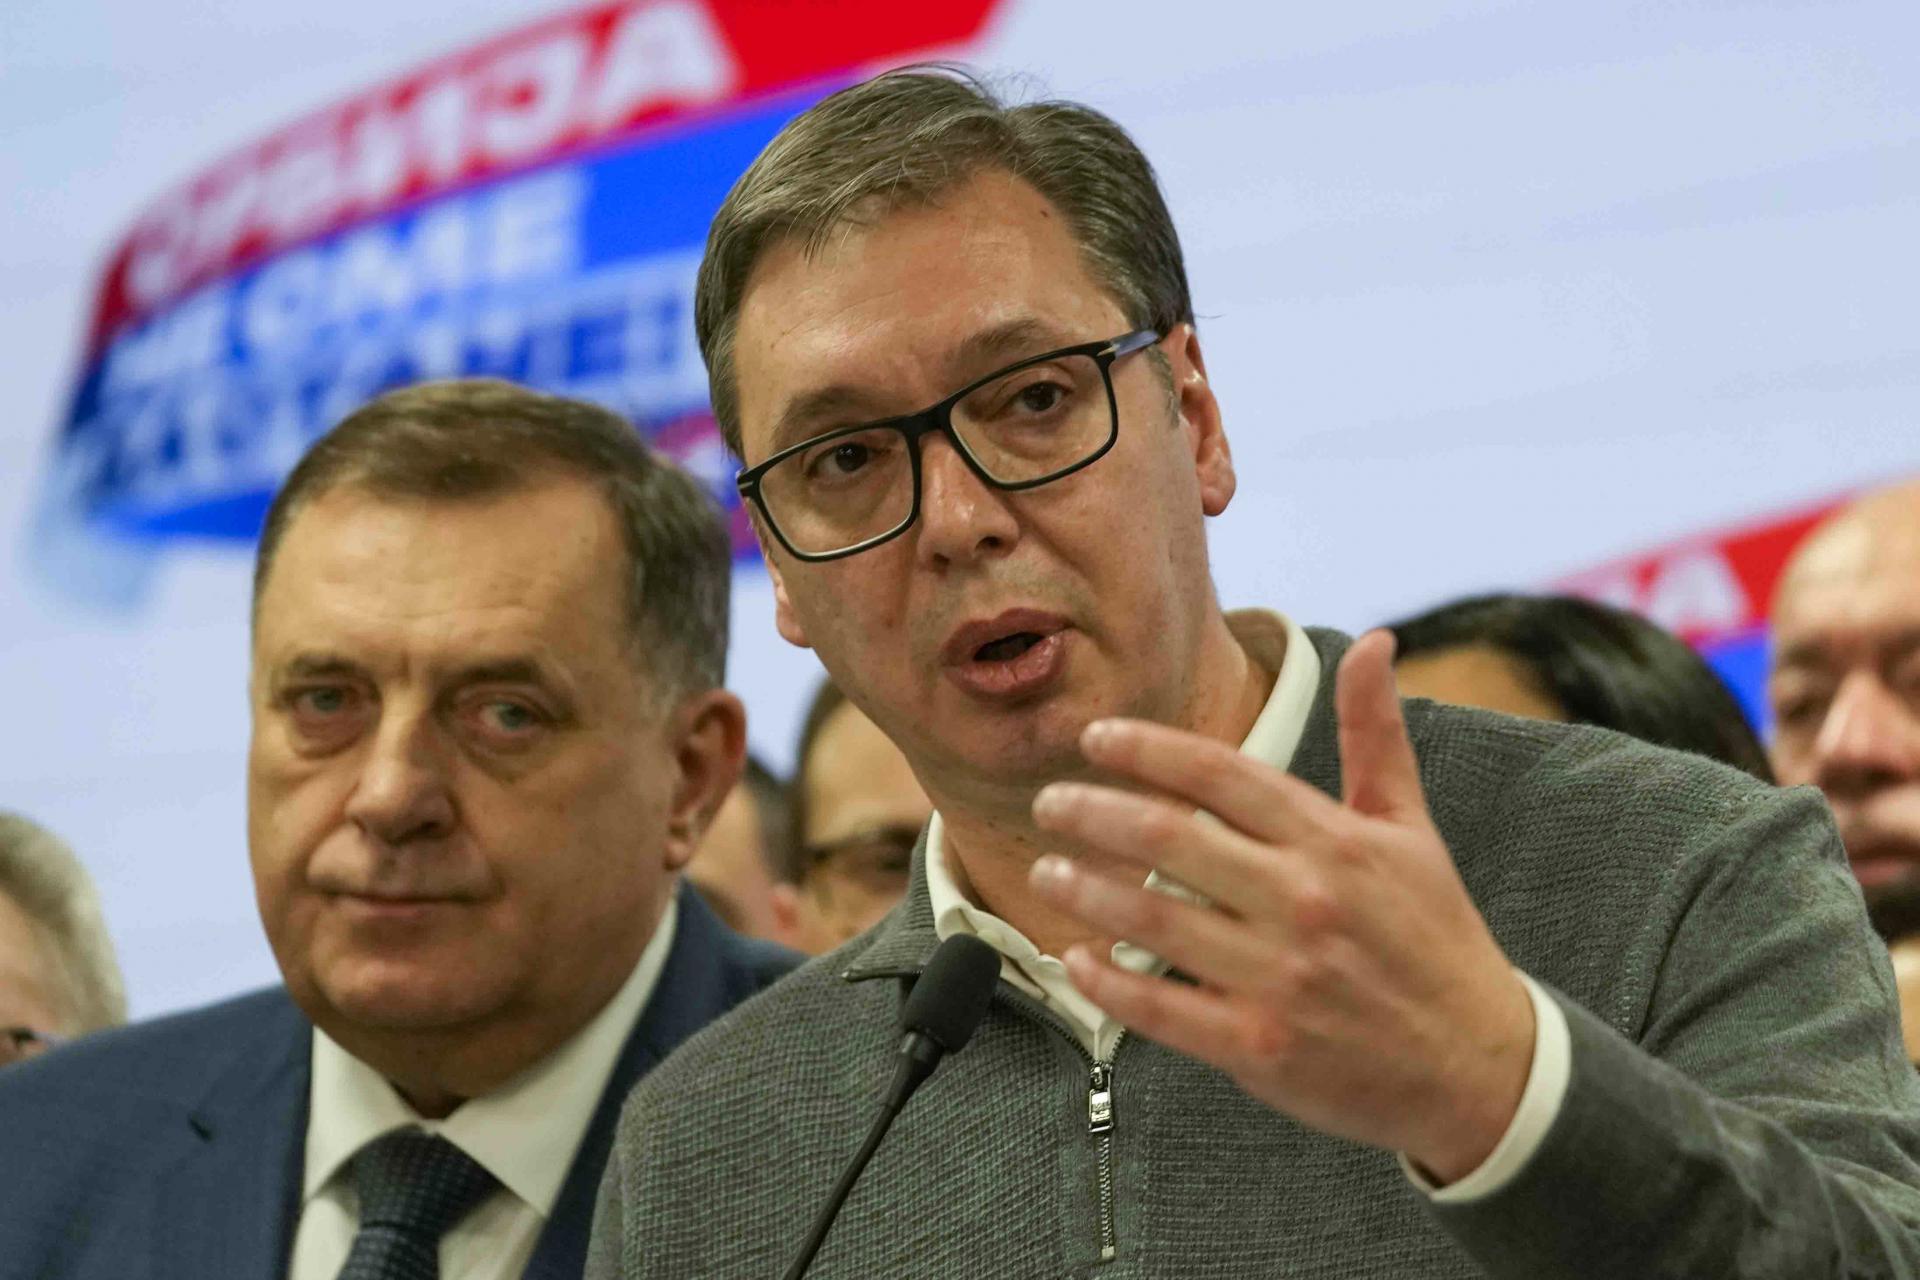 Nerovný boj a prítomnosť Vučiča v kampani. Zástupcovia medzinárodných organizácií kritizujú srbské voľby